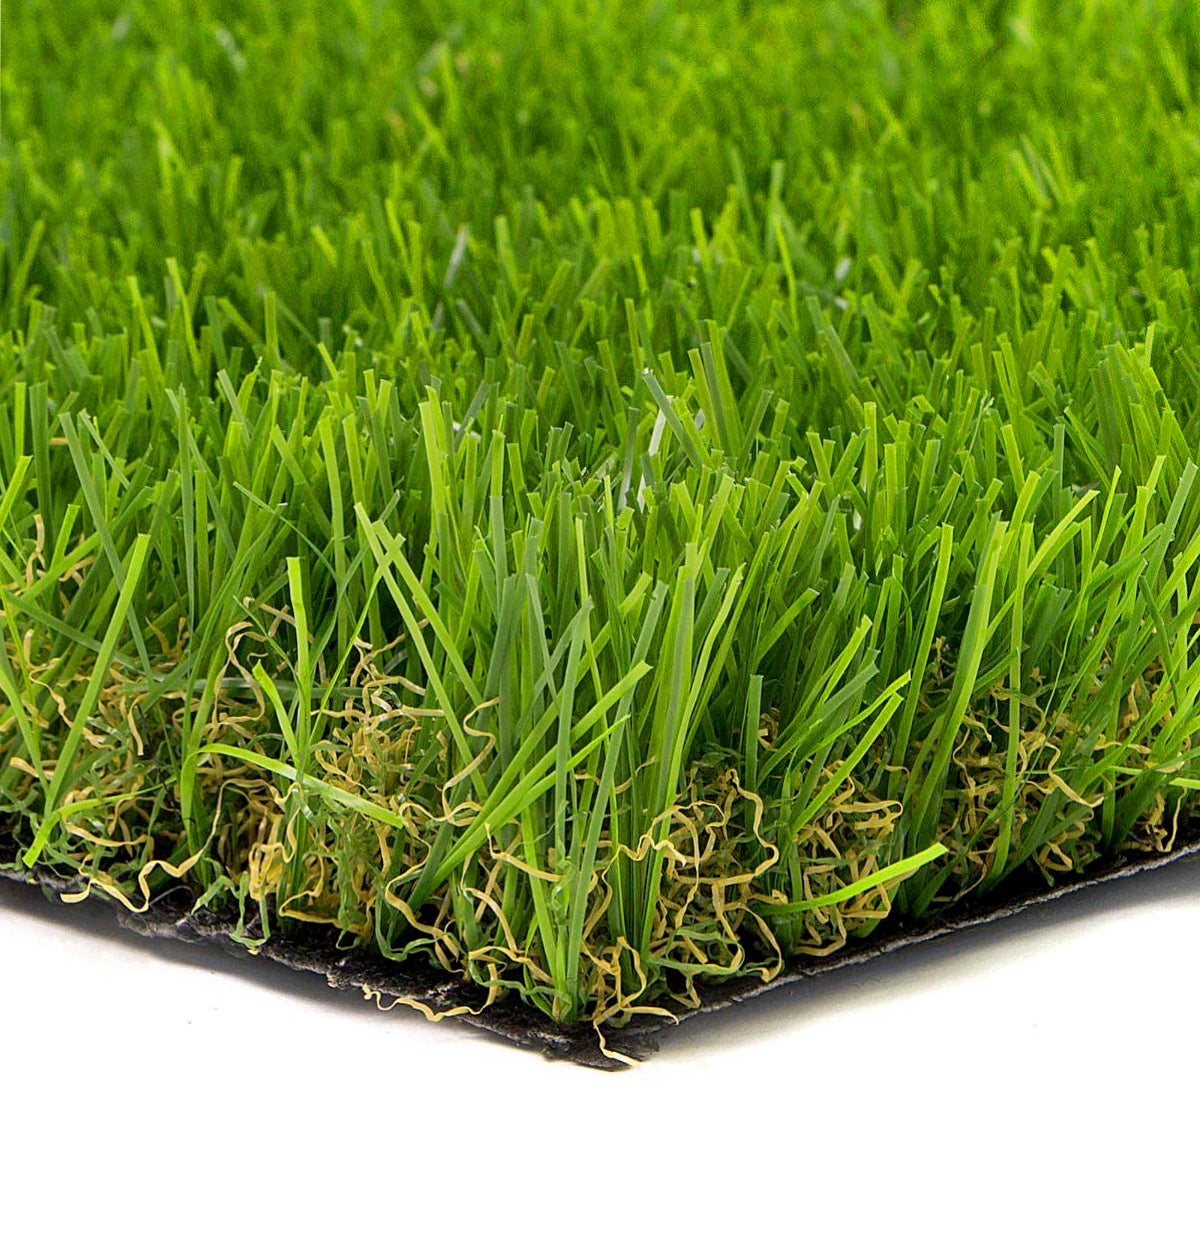 Prato finto erba sintetica tappeto erboso drenante esterno effetto secco 4  cm 35MM 10x10 Campione